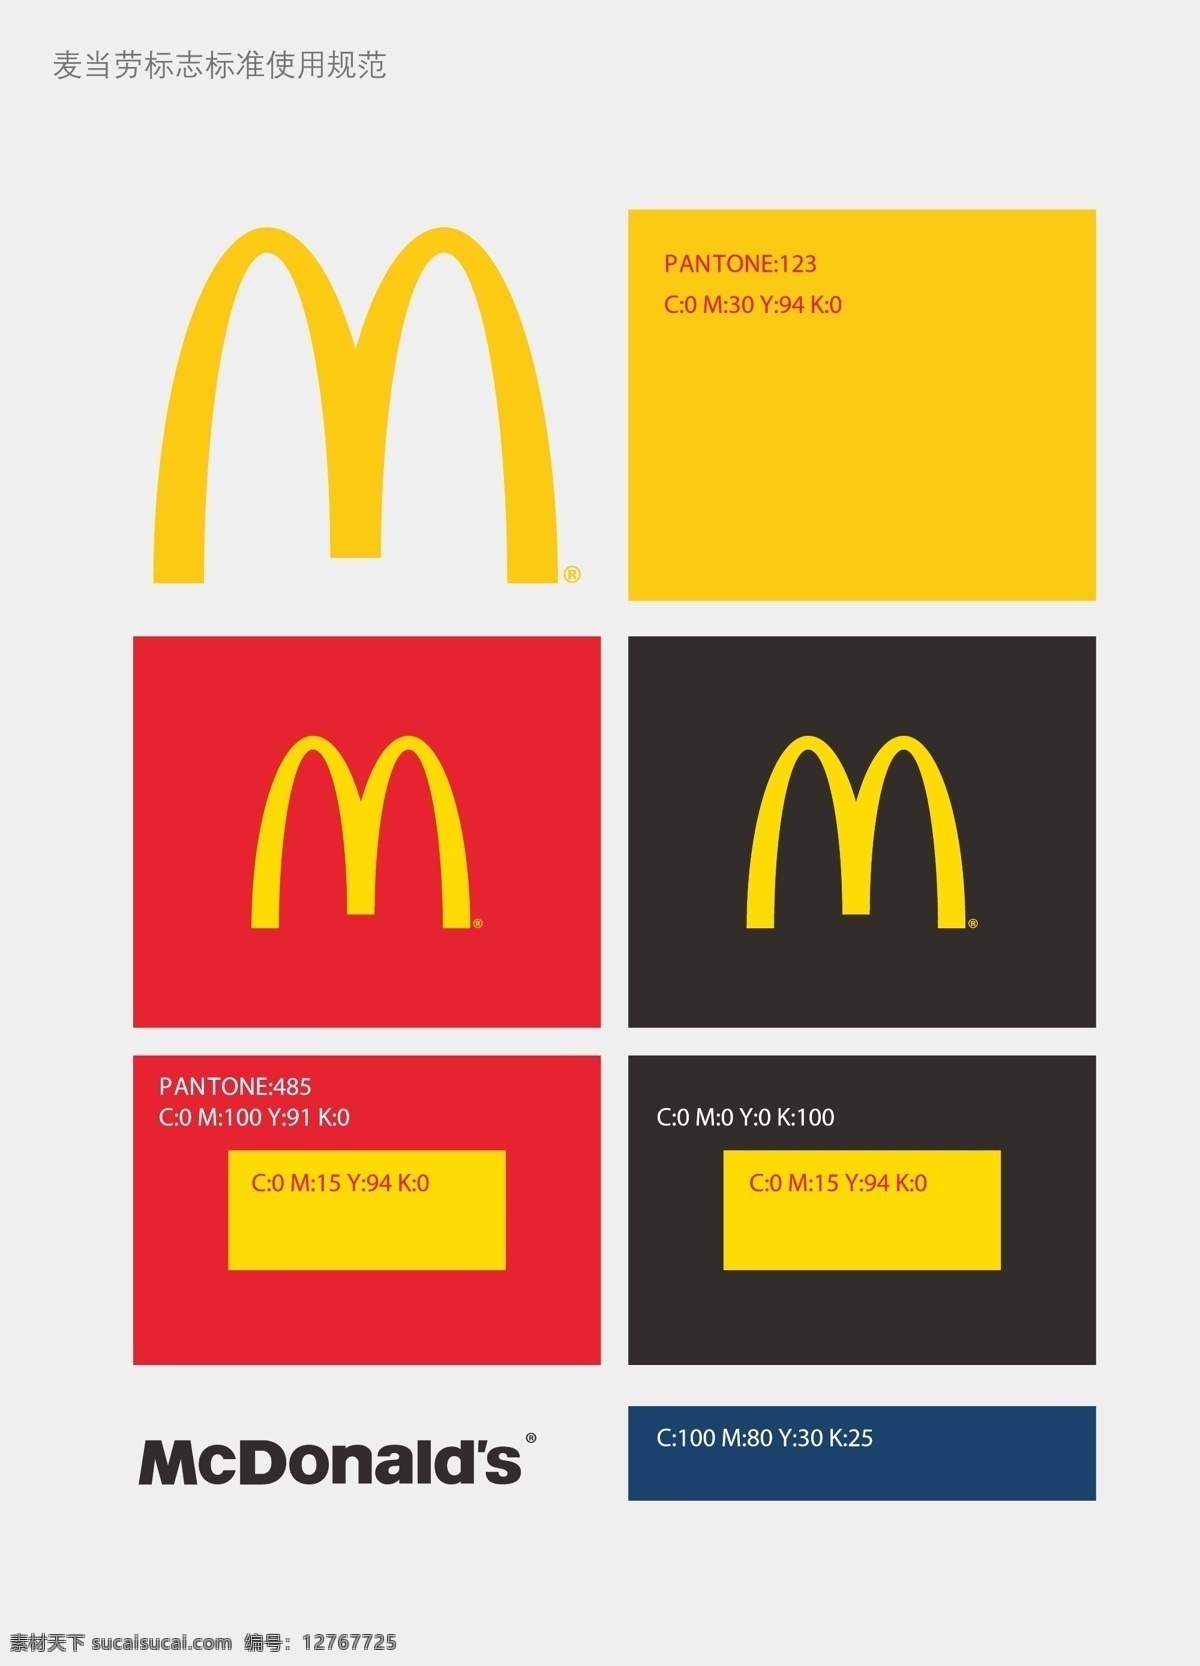 麦当劳 标志 标准 使用 麦当劳标志 logo 颜色 企业 标识标志图标 矢量